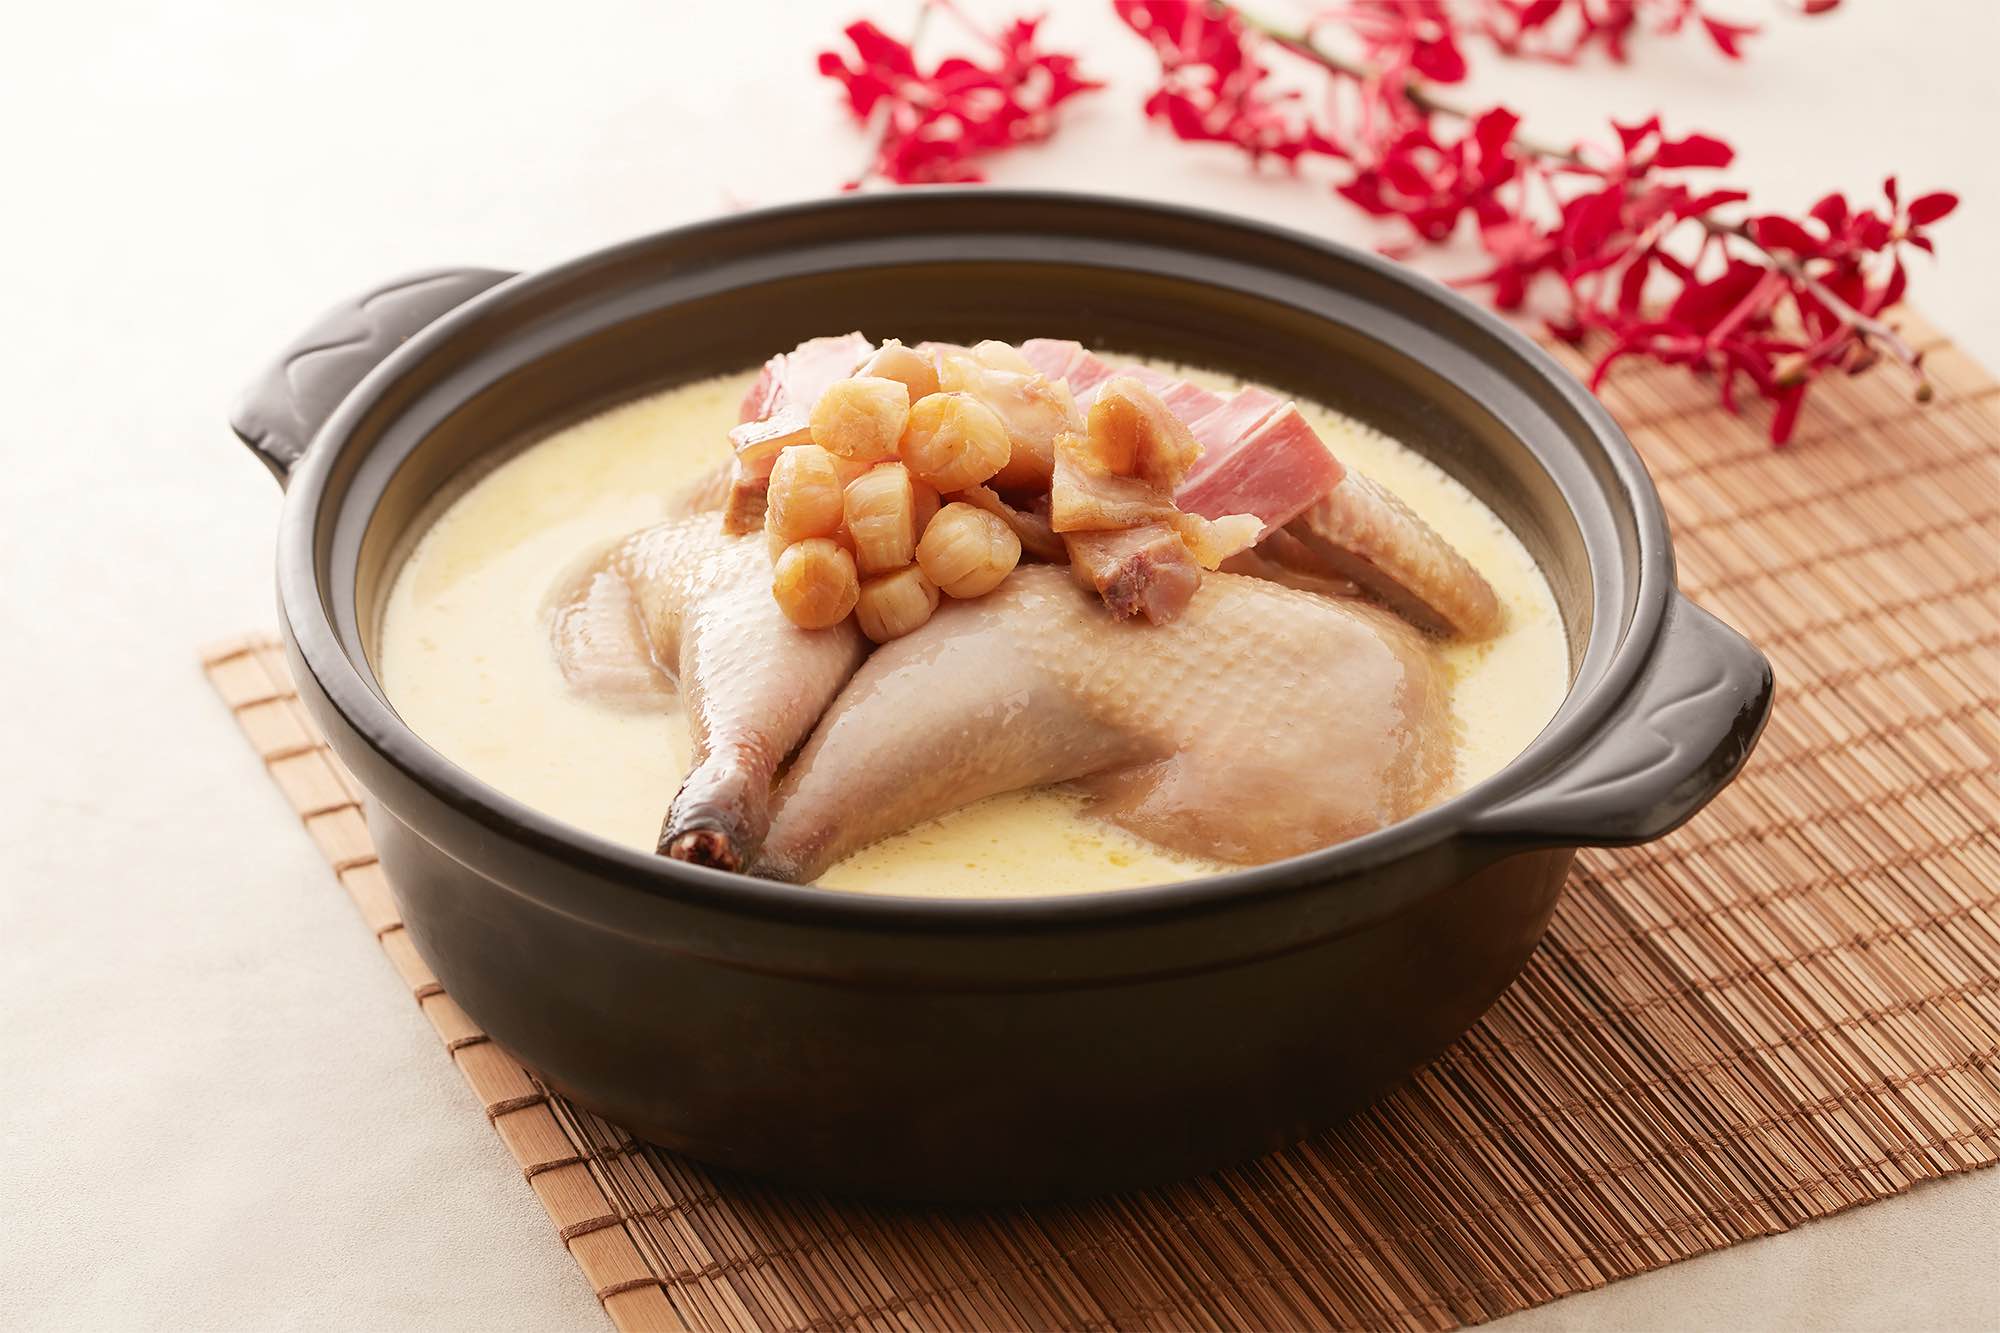 請客樓經典料理砂鍋一品雞是用大量鮮味食材吊出雞湯鮮味。